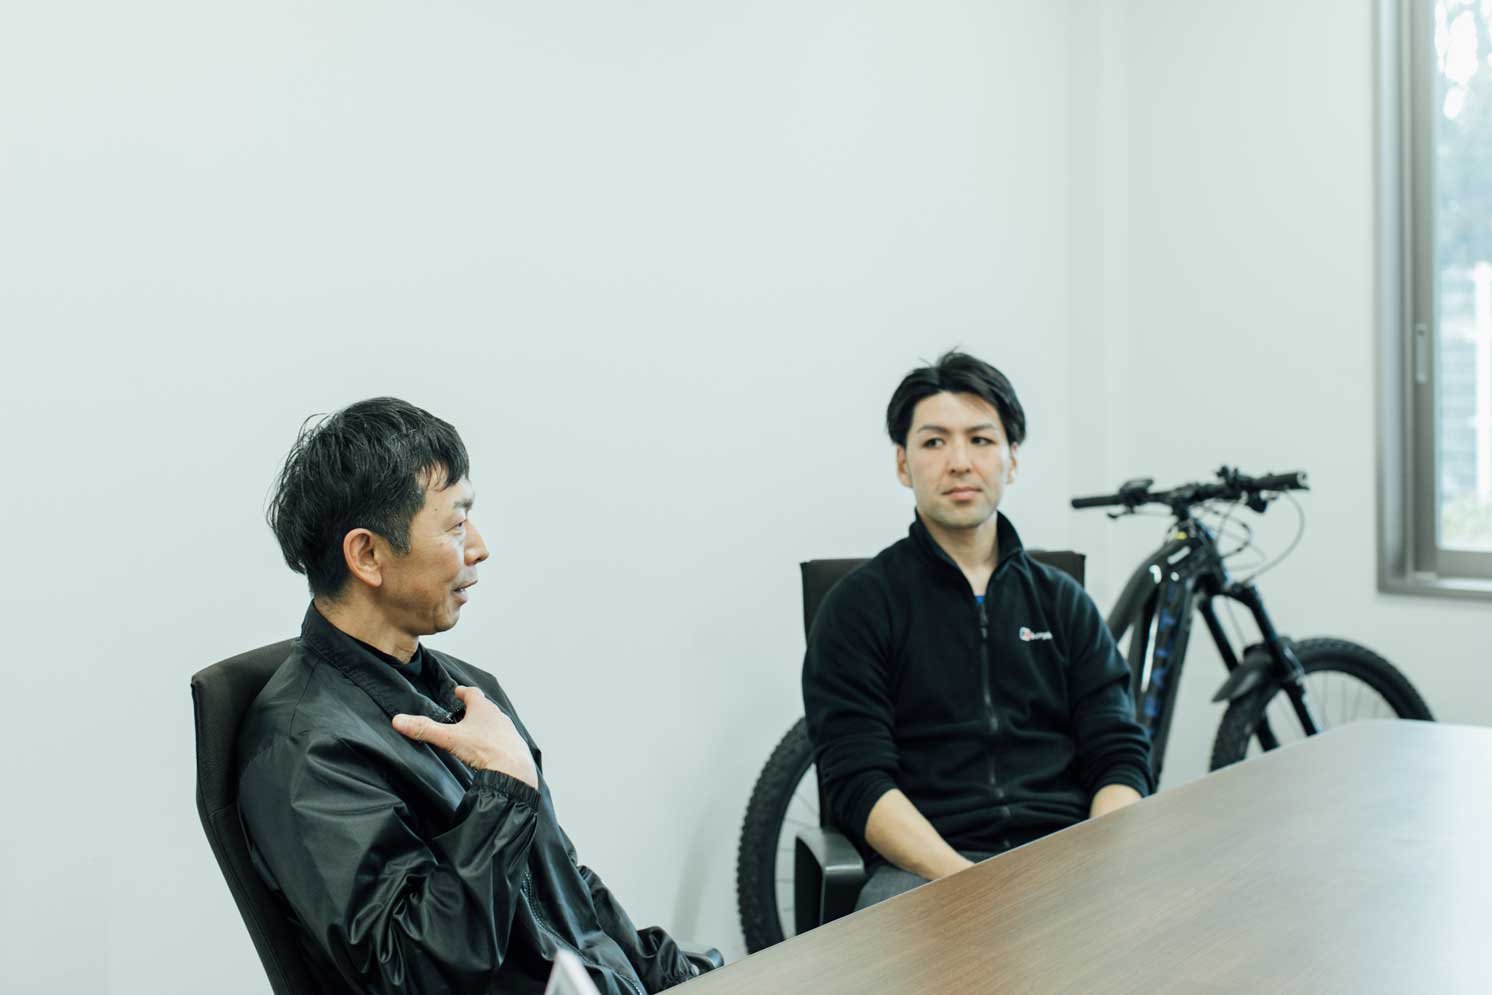 左から坂本氏、宮前氏 | Make New Magazine「未来の定番」をつくるために、パナソニックのリアルな姿を伝えるメディア